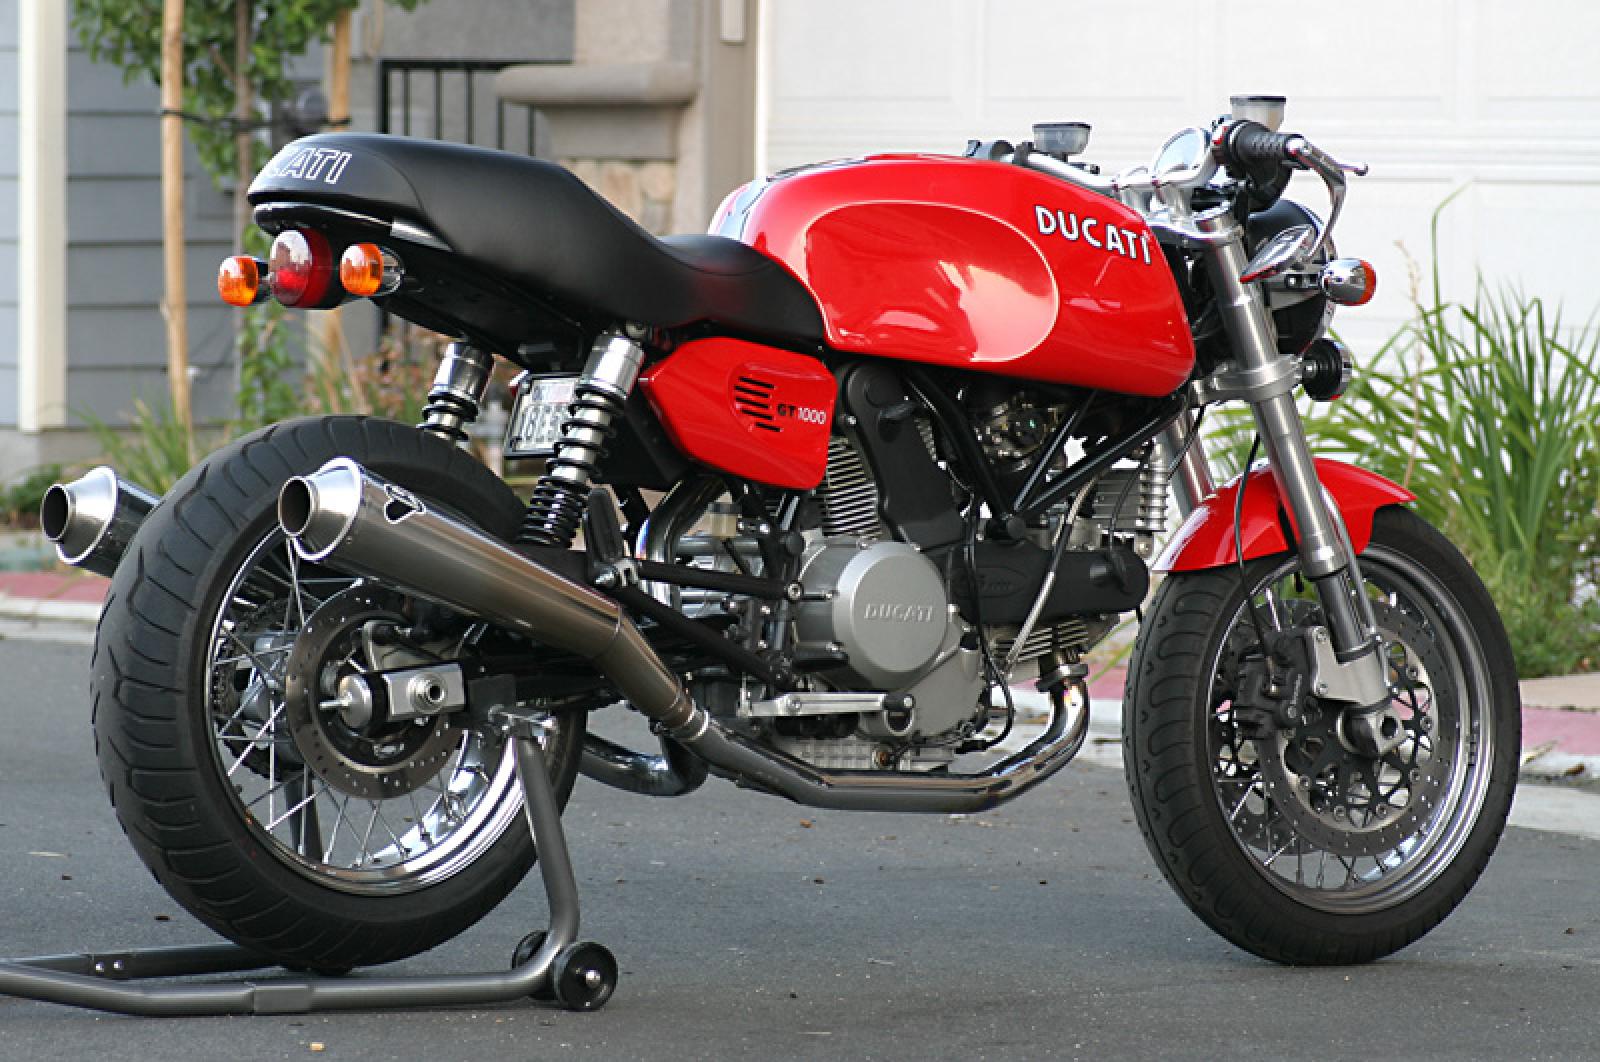 Ducati Ducati Gt 1000 Moto Zombdrive